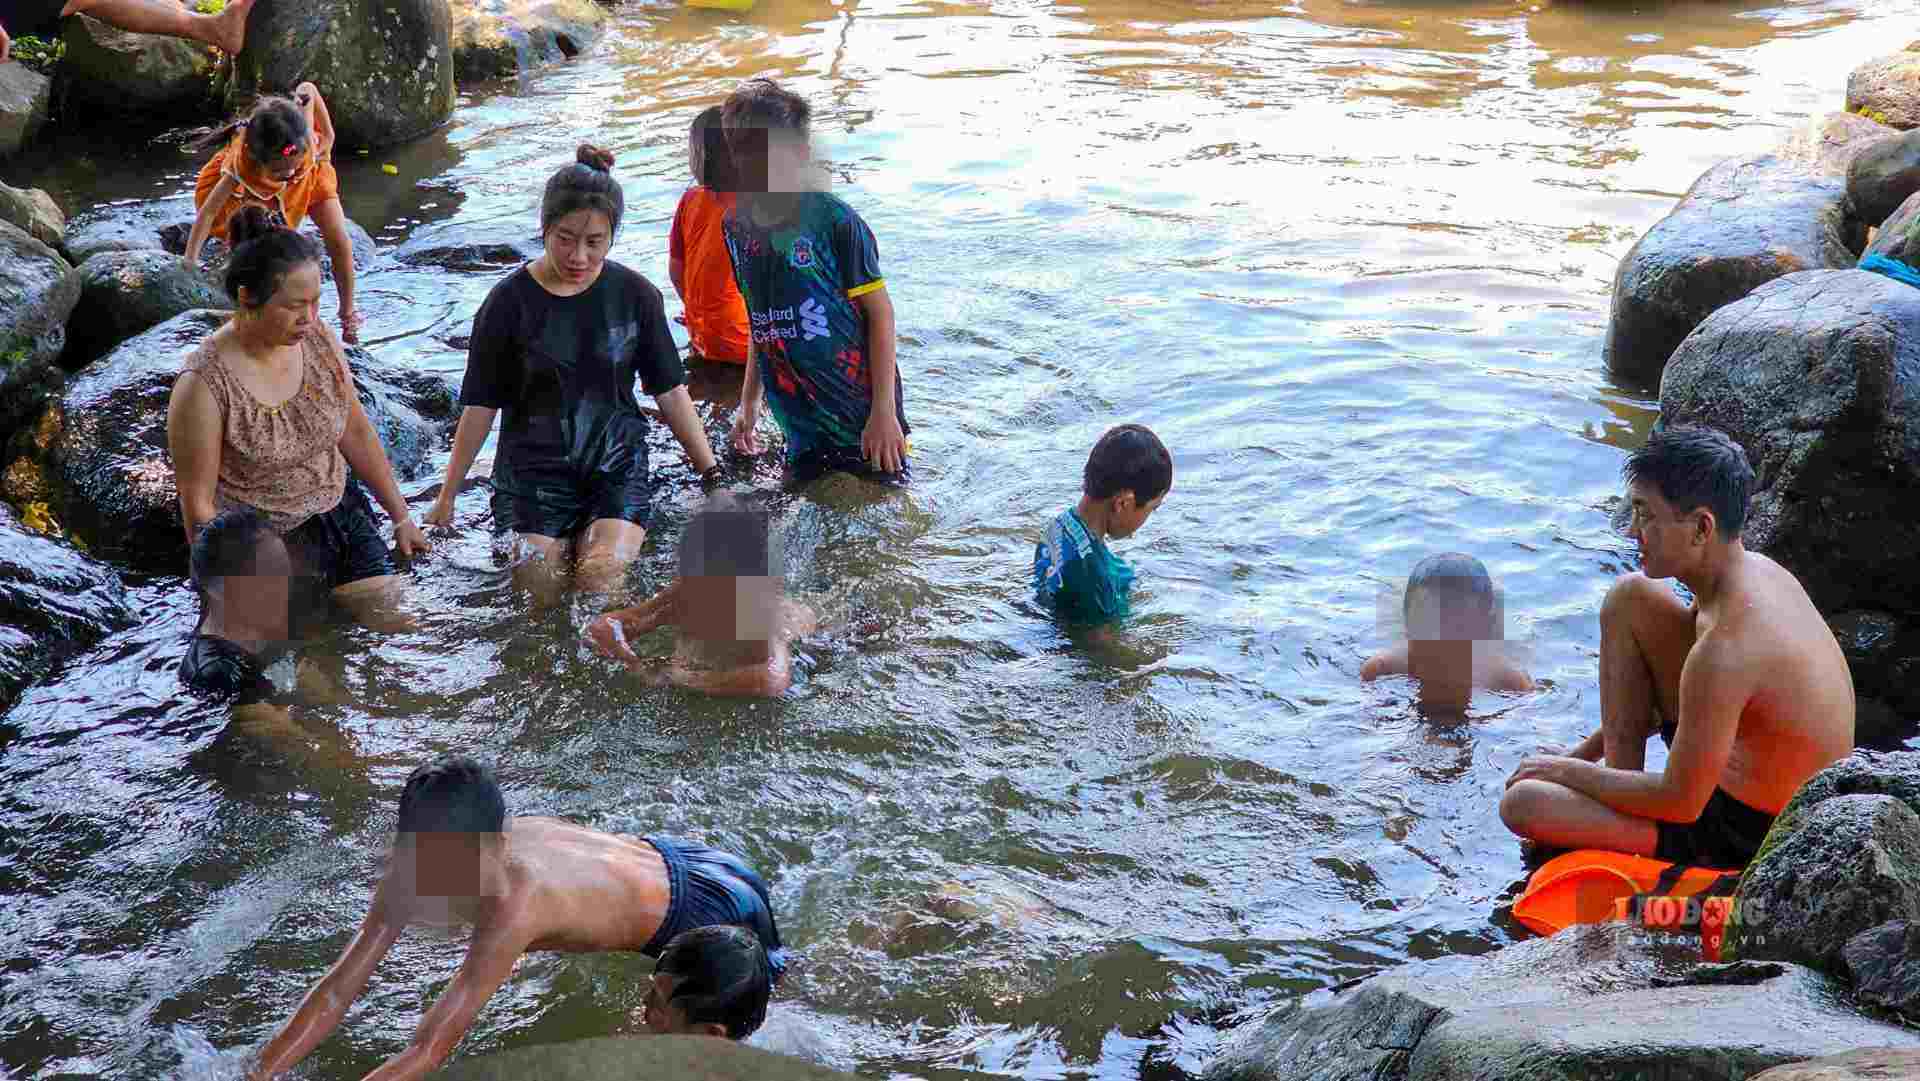 Điểm đặc biệt, hệ thống giếng cổ ở đây cạn, nhiều trẻ nhỏ thỏa sức ngâm mình trong dòng nước mát lành.